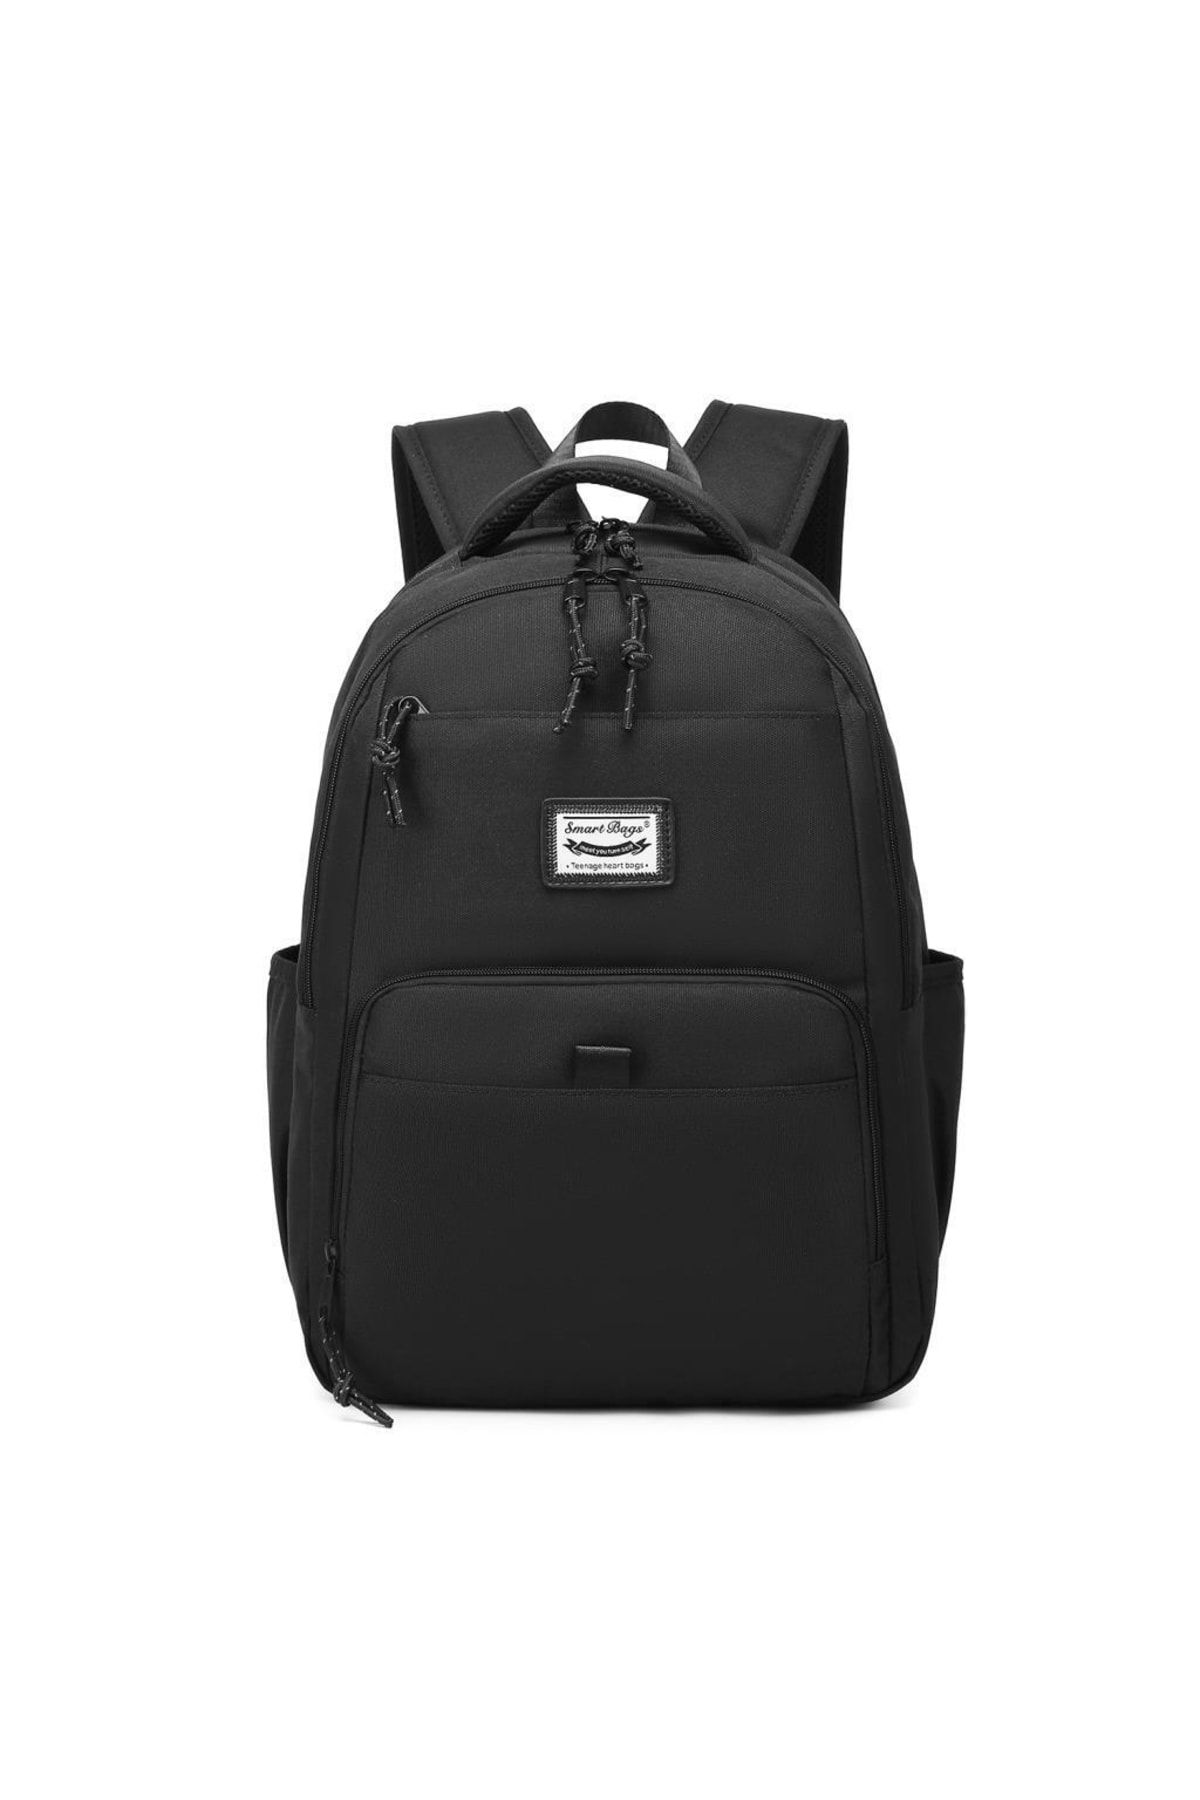 Smart Bags Algstore (Smart Bags) Sırt Çantası Okul Boyu Laptop Gözlü 3159